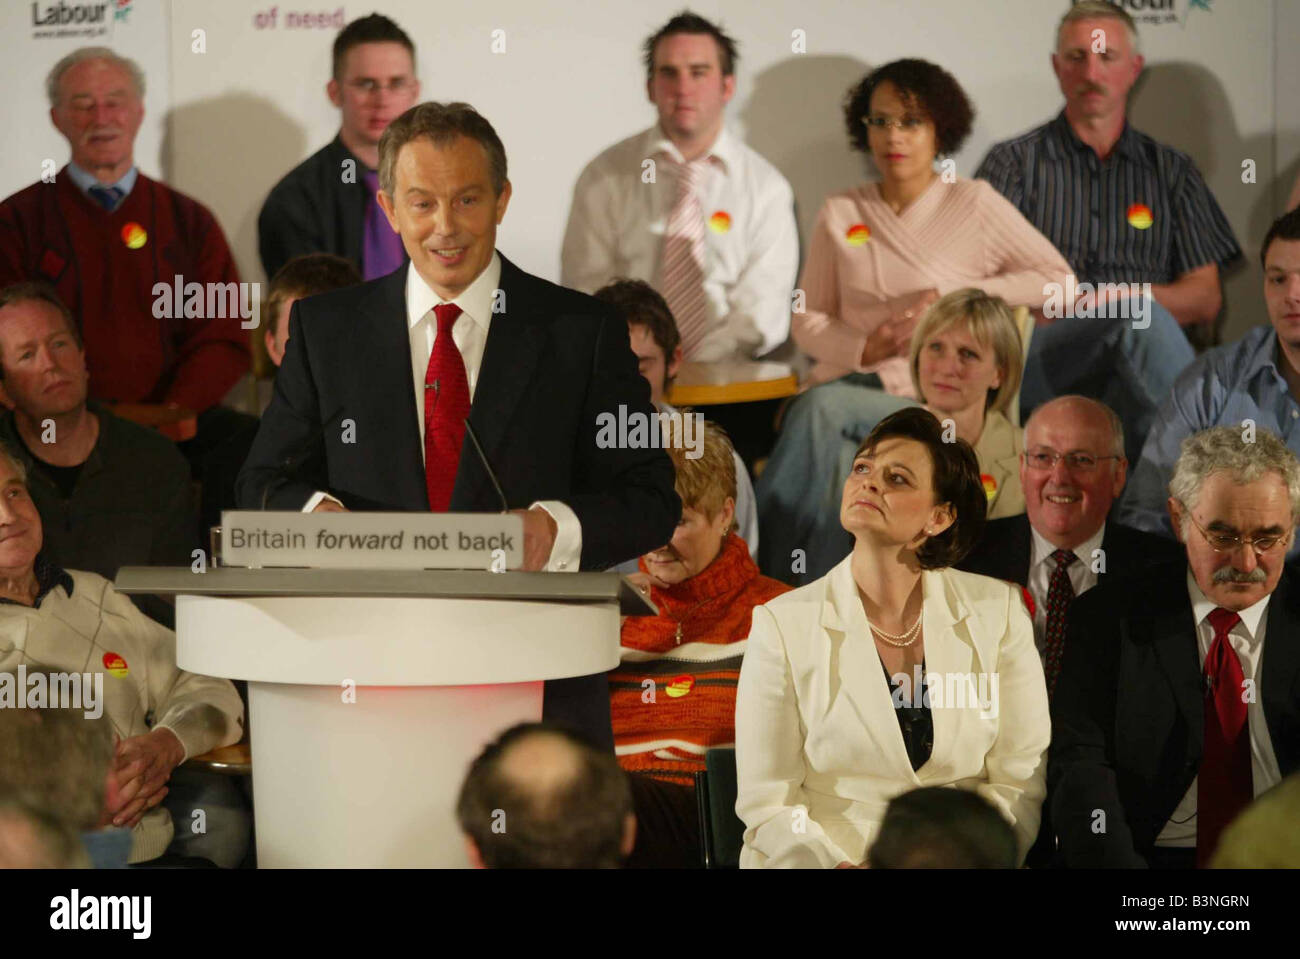 Tony Blair, Premier Ministre de participer à une réunion d'adoption de l'Sedgfield Parti du Travail de l'élire comme candidat pour le parti du travail pour l'élection qui aura lieu en mai son épouse Cherie Blair regarde comme il traite son public Avril 2005 Banque D'Images